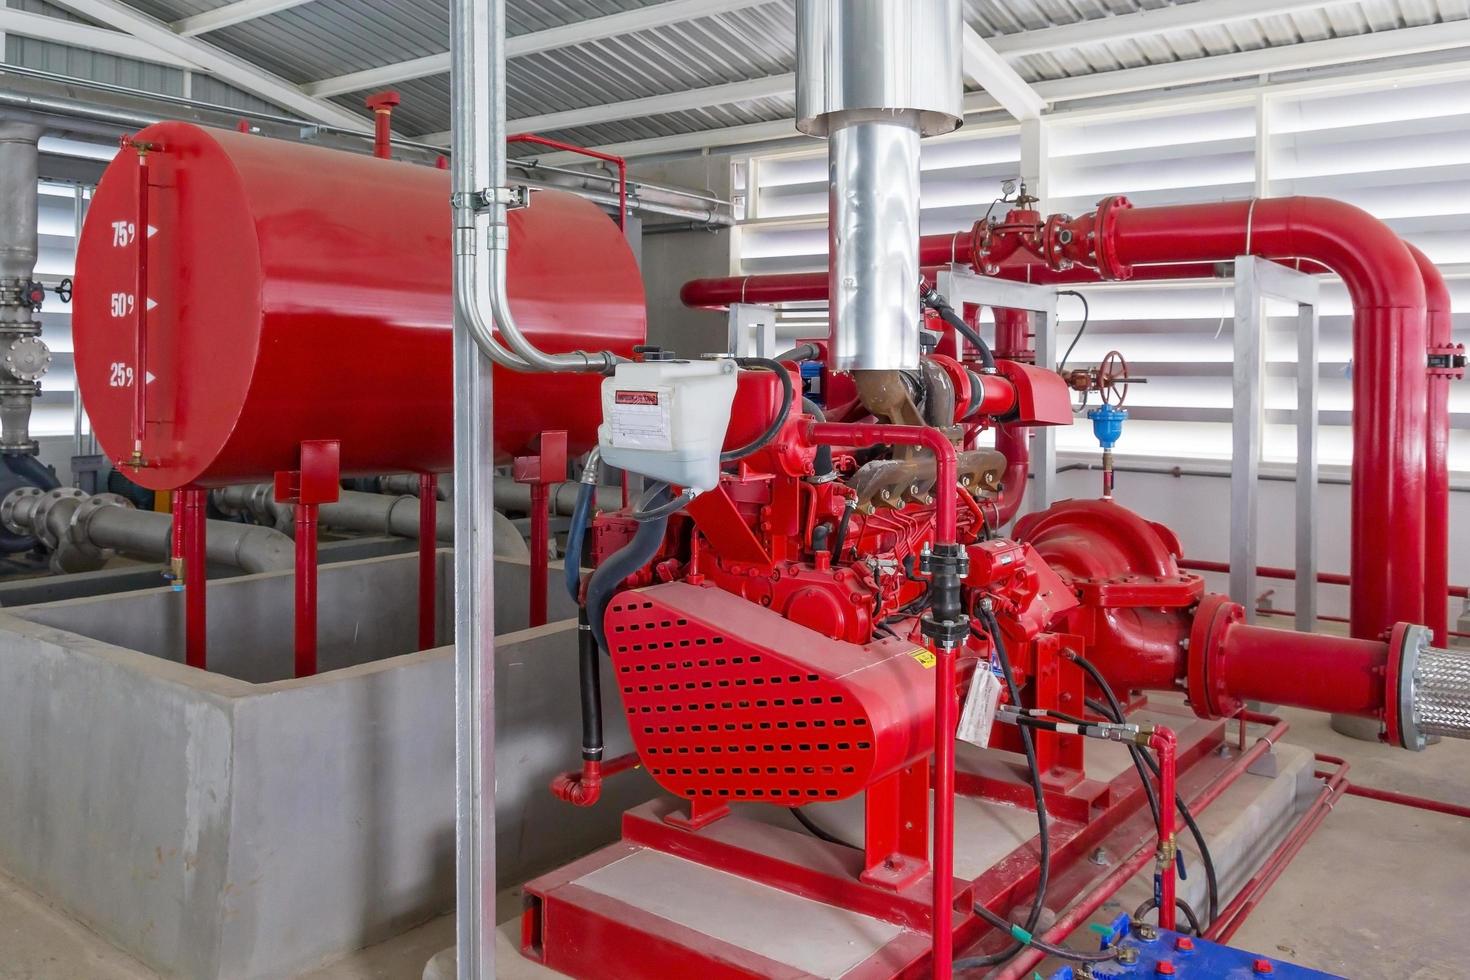 Bomba de generador roja para tubería de rociadores de agua y sistema de control de alarma contra incendios foto